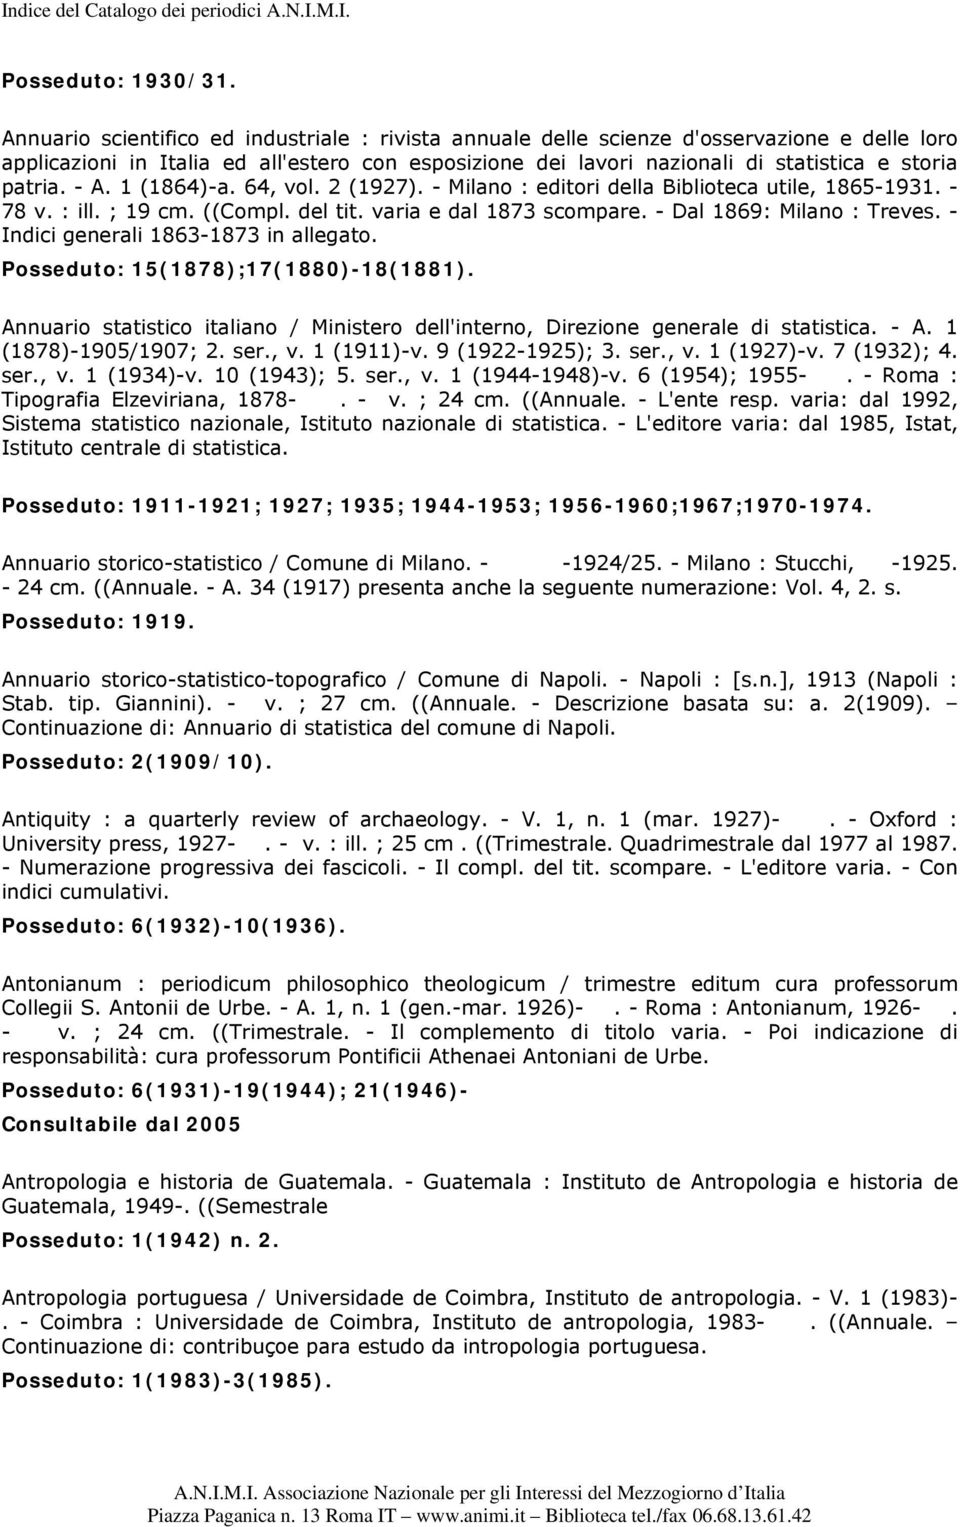 - A. 1 (1864)-a. 64, vol. 2 (1927). - Milano : editori della Biblioteca utile, 1865-1931. - 78 v. : ill. ; 19 cm. ((Compl. del tit. varia e dal 1873 scompare. - Dal 1869: Milano : Treves.